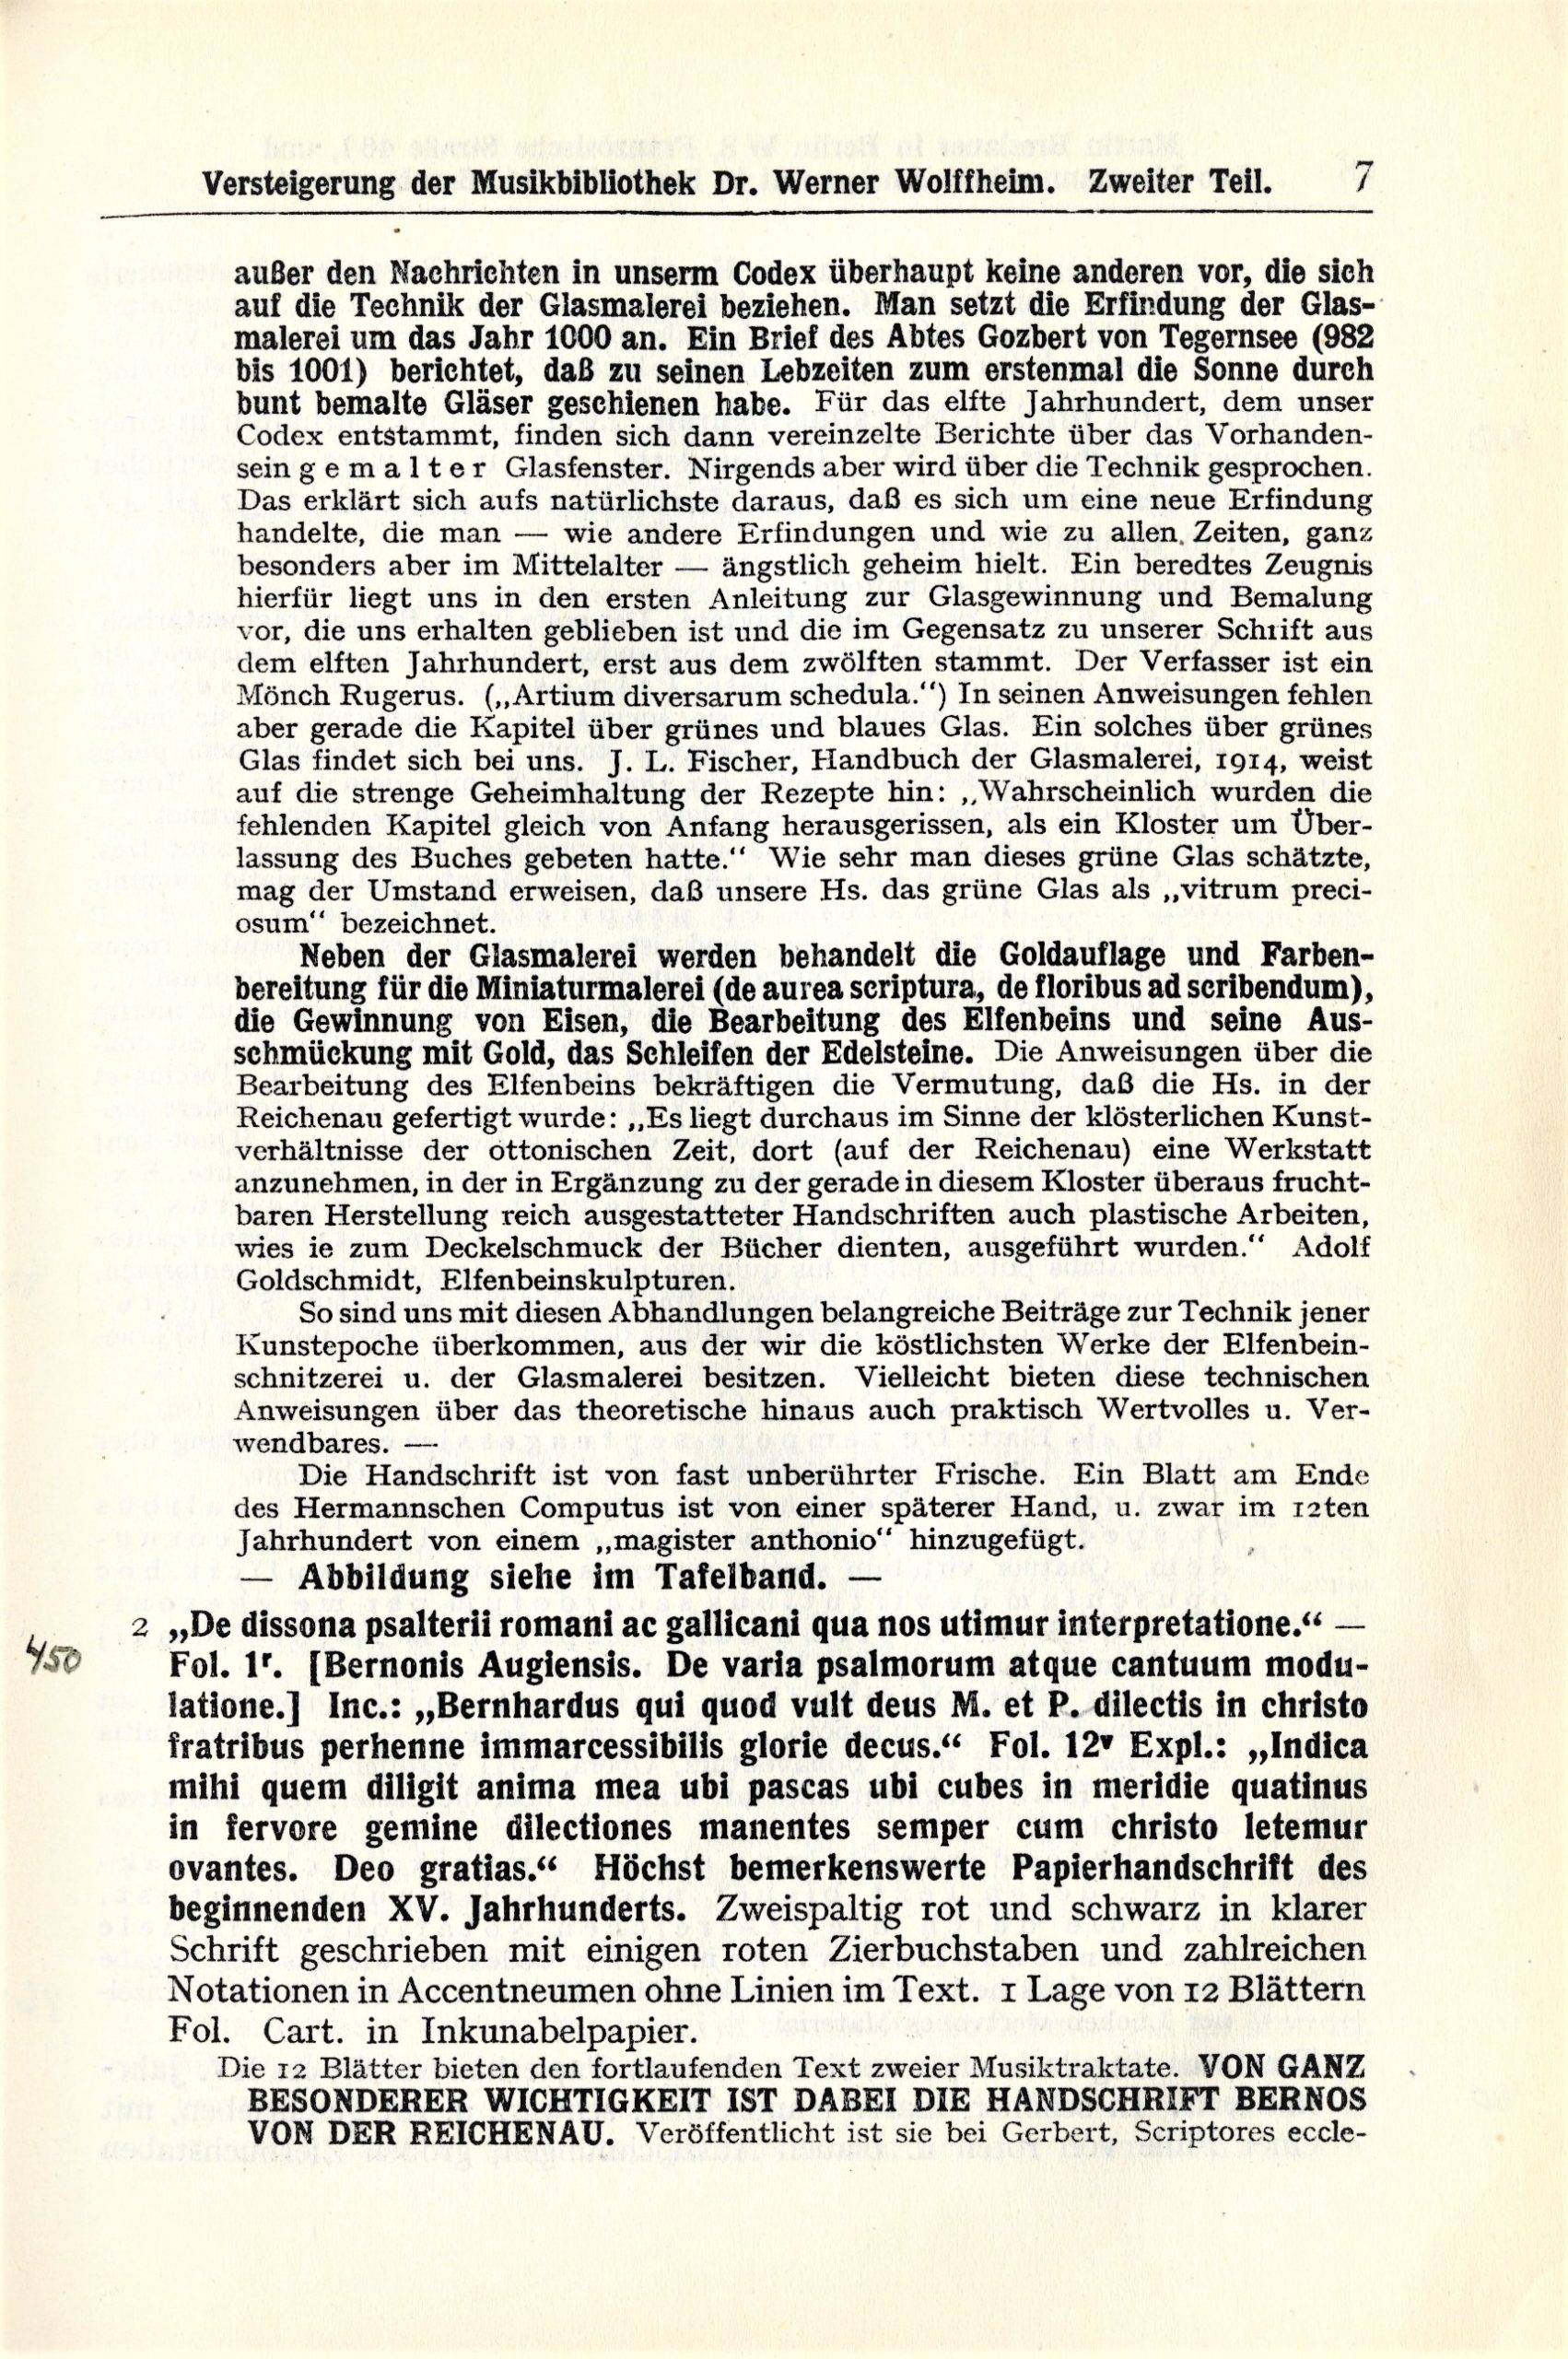 Wolffheim auction catalog vol 2, page 7